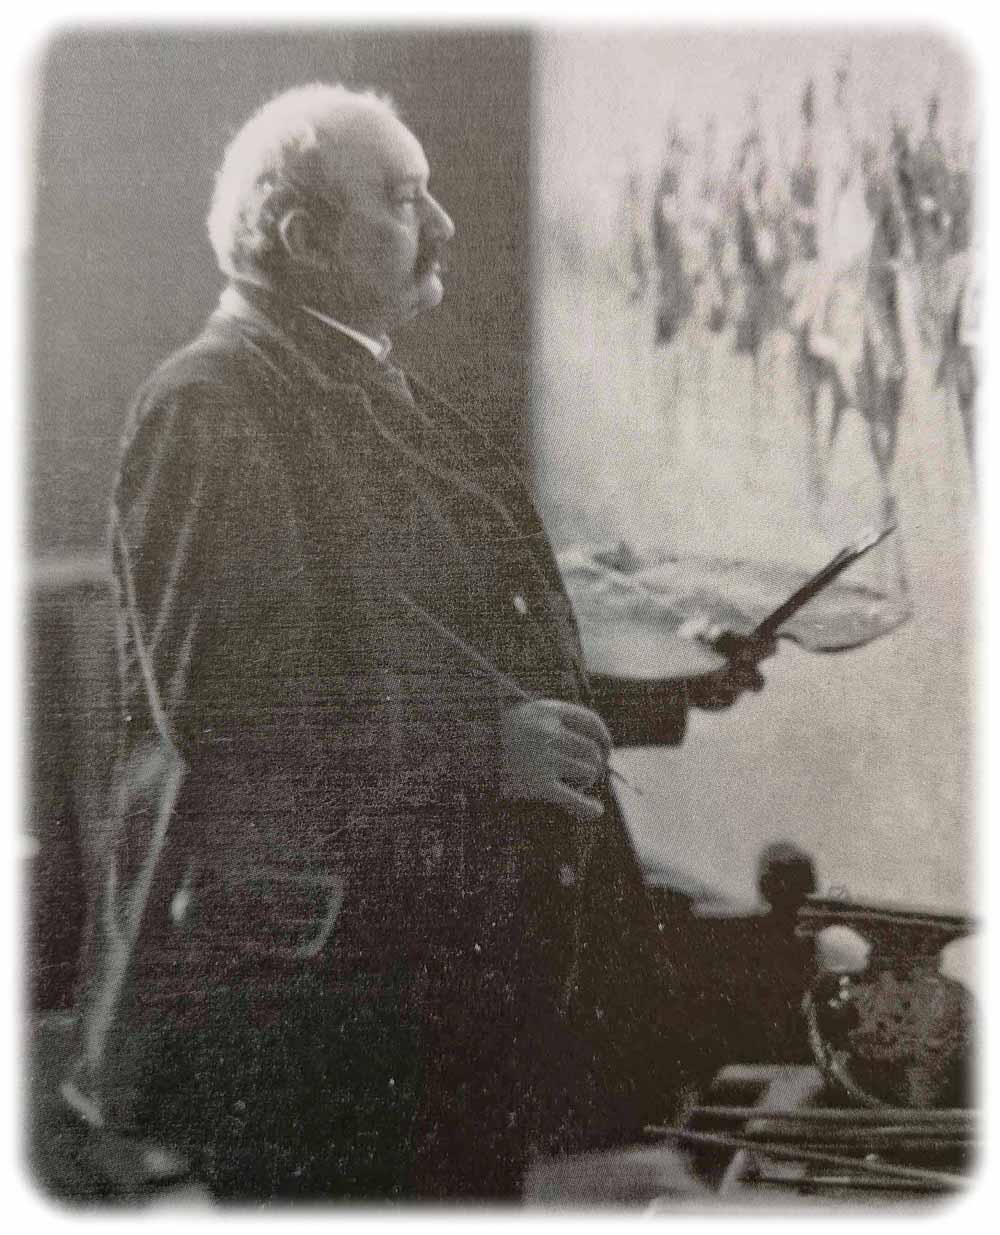 Panorama-Maler Louis Braun (1836-1916) in seinem Atelier (um 1910). (Repro (hw) aus: Ausstellungskatalog "Krieg. Macht. Nation", Sandstein-Verlag